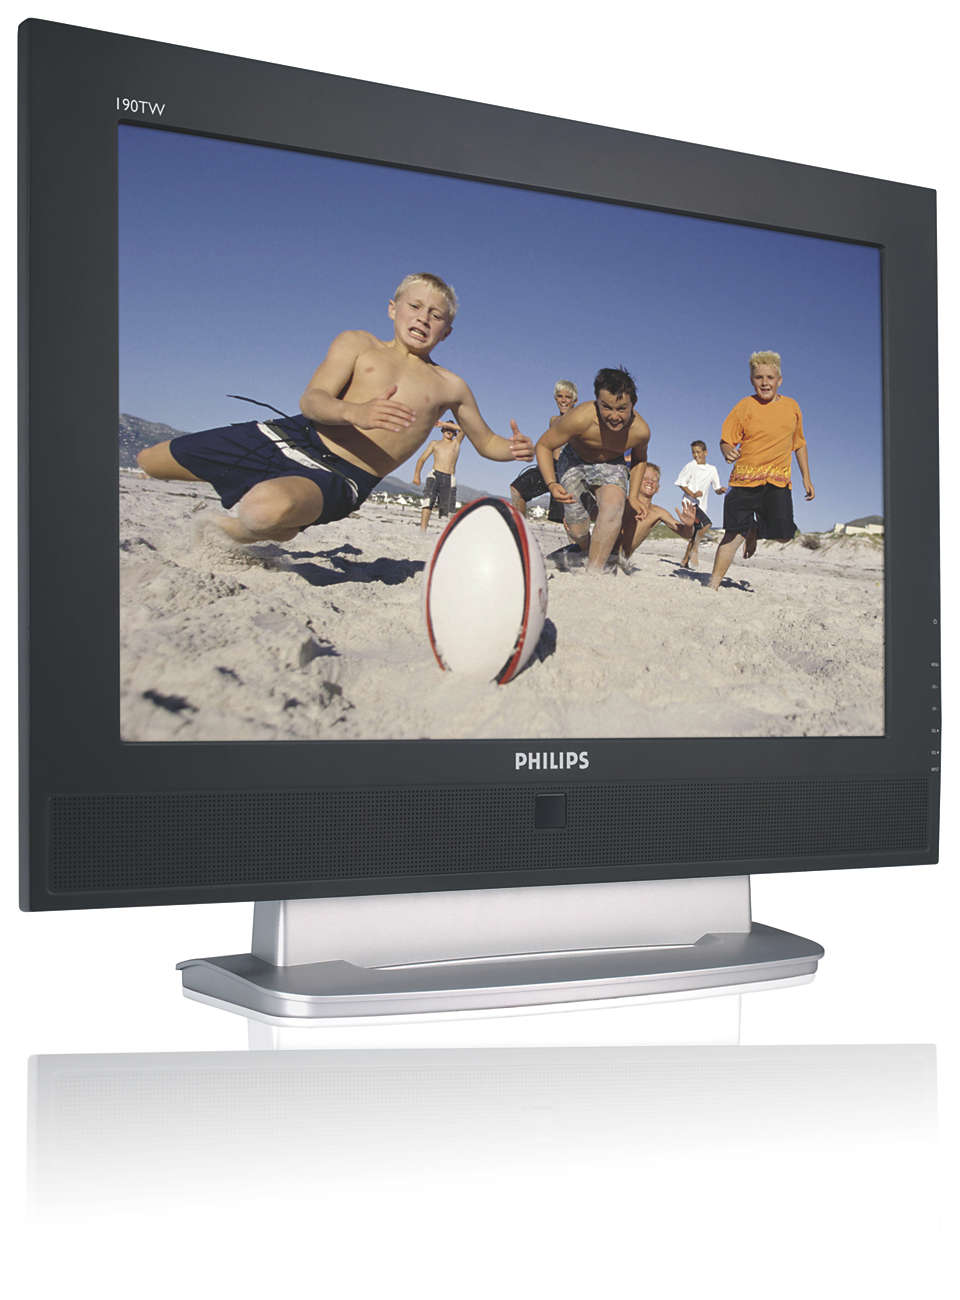 LCD-bildskärms- och TV-kombination med många funktioner